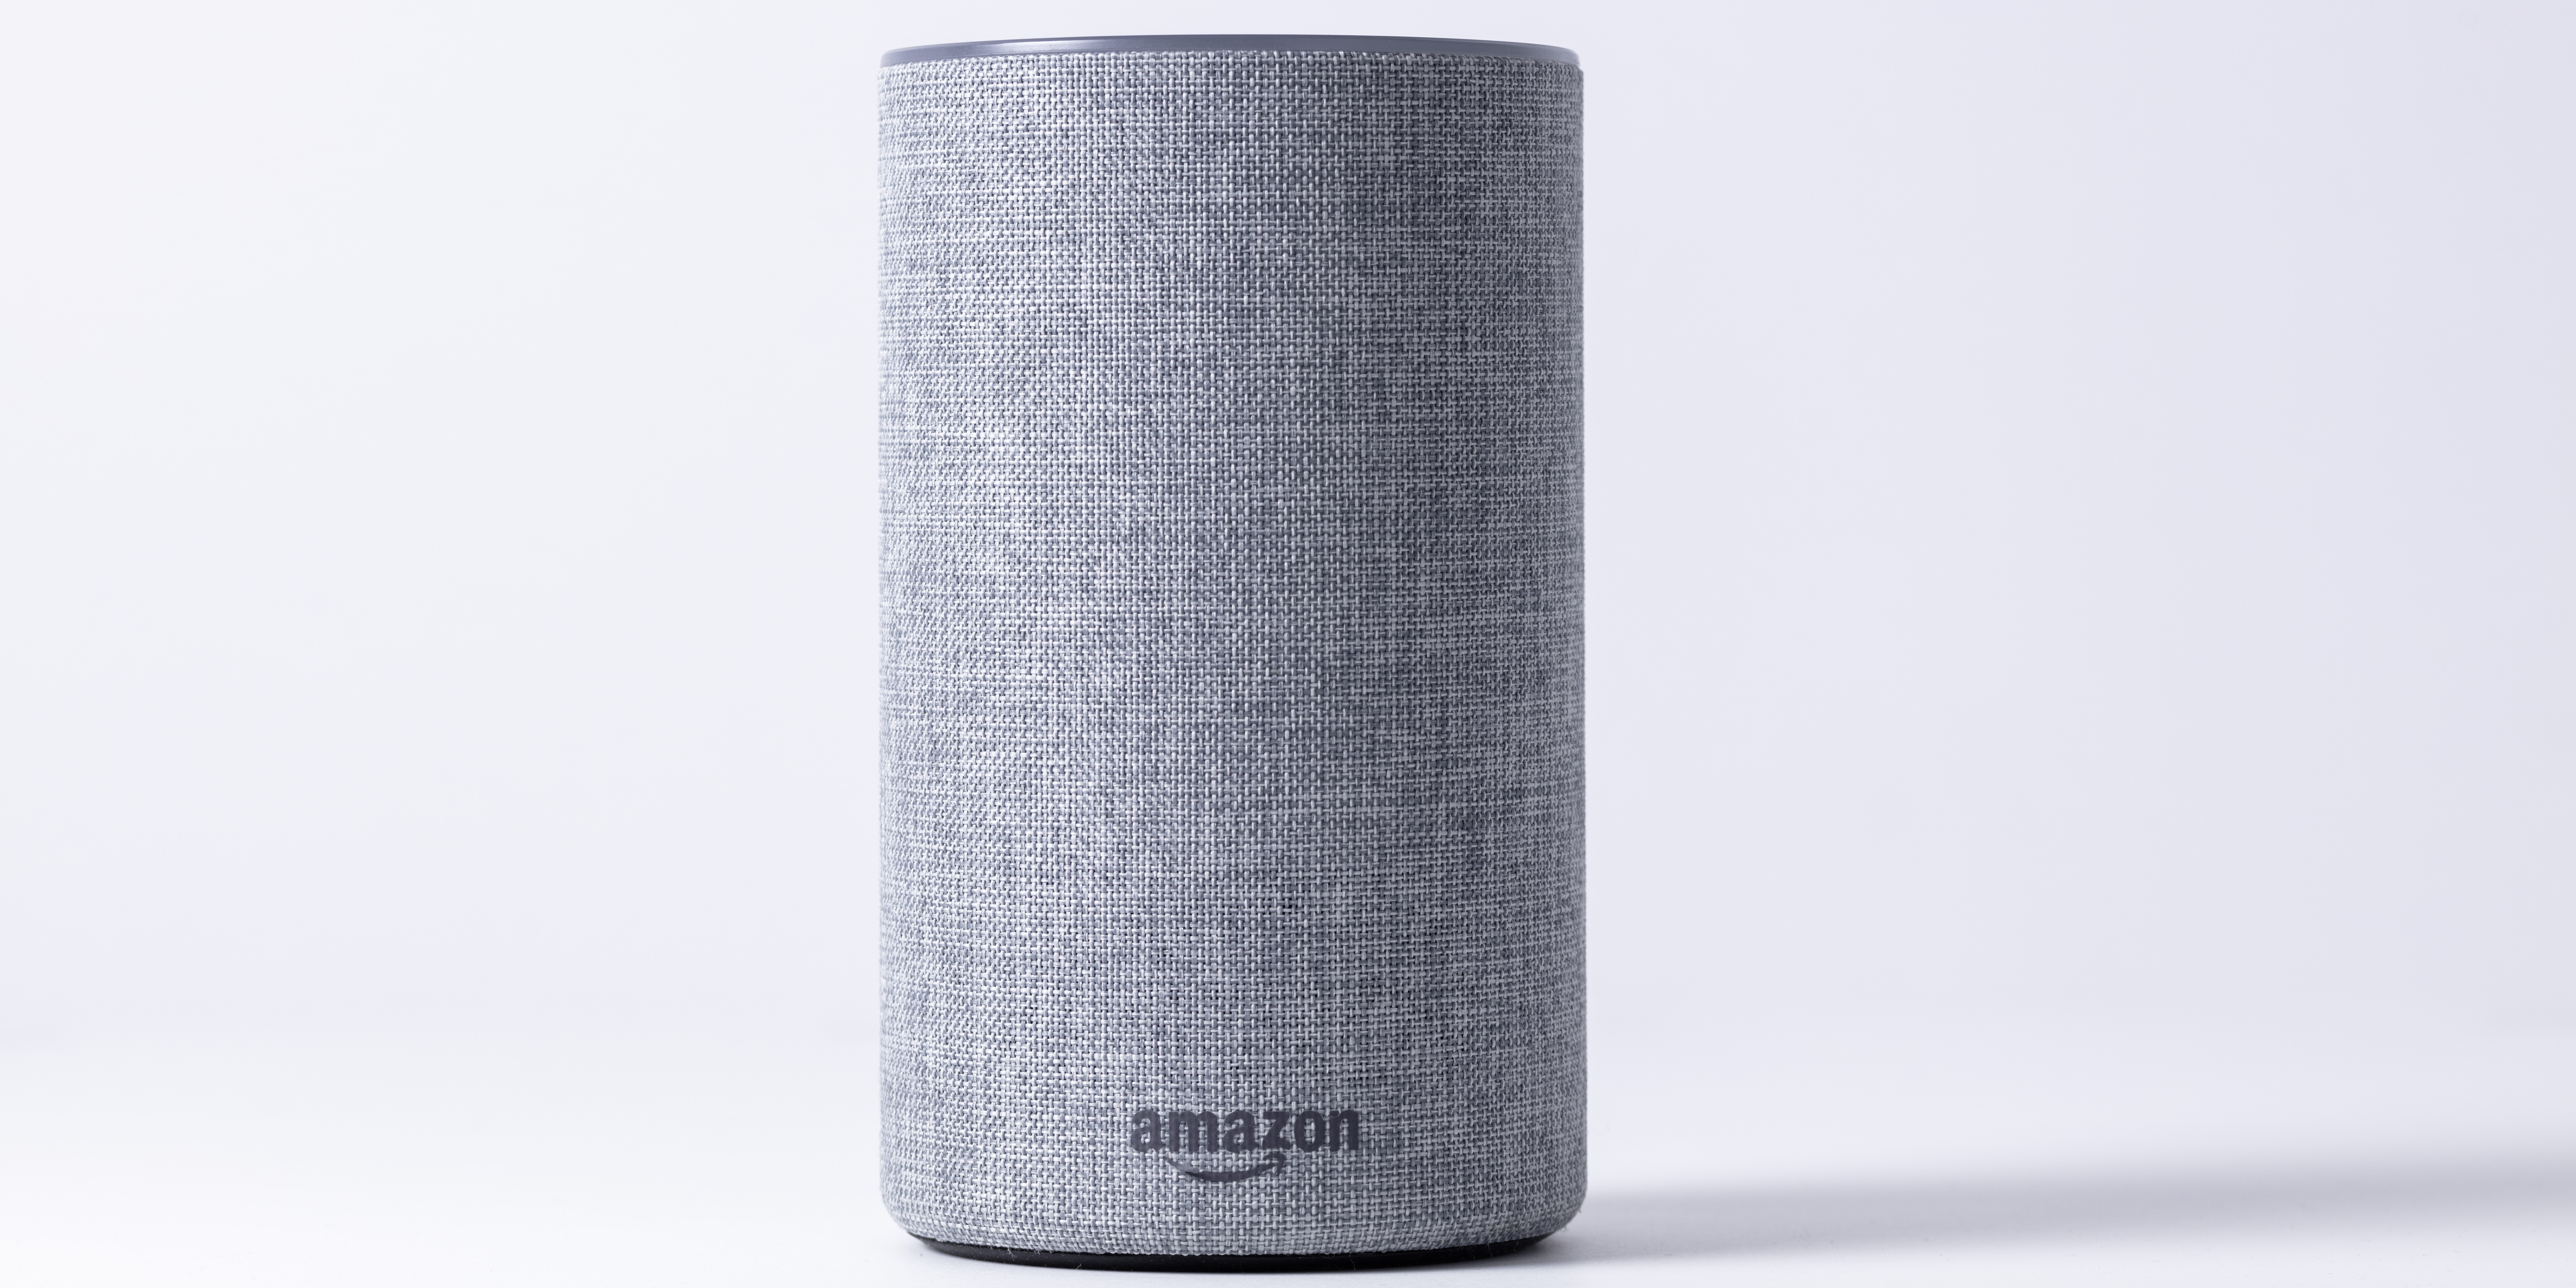 Amazon sta integrando l'intelligenza artificiale generativa nell'assistente Alexa